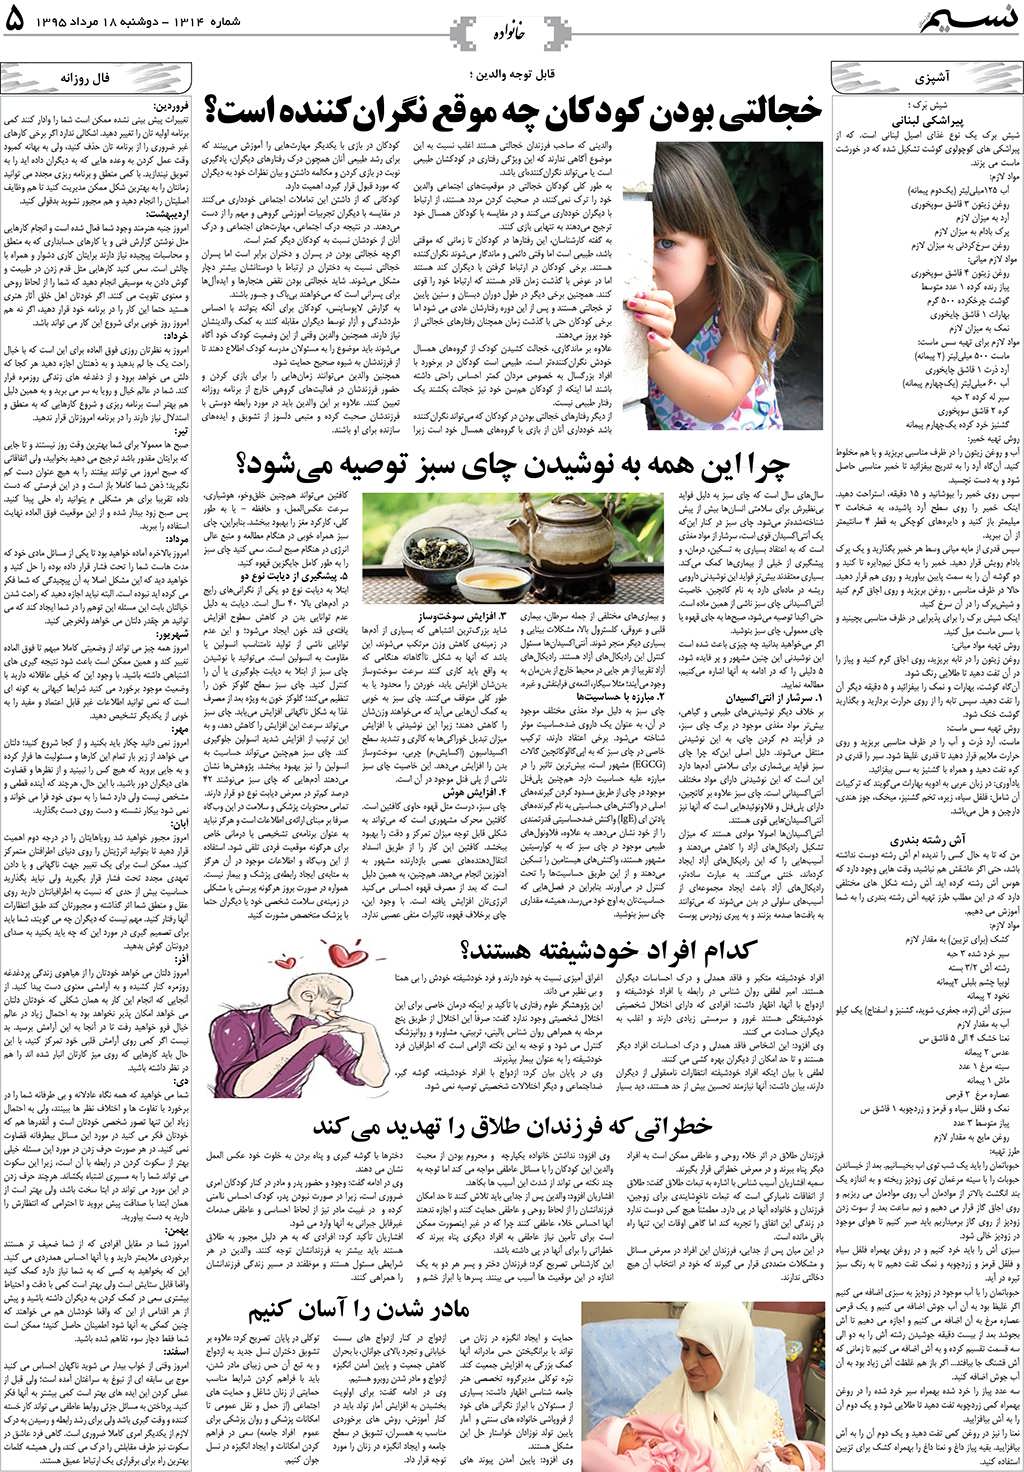 صفحه خانواده روزنامه نسیم شماره 1314